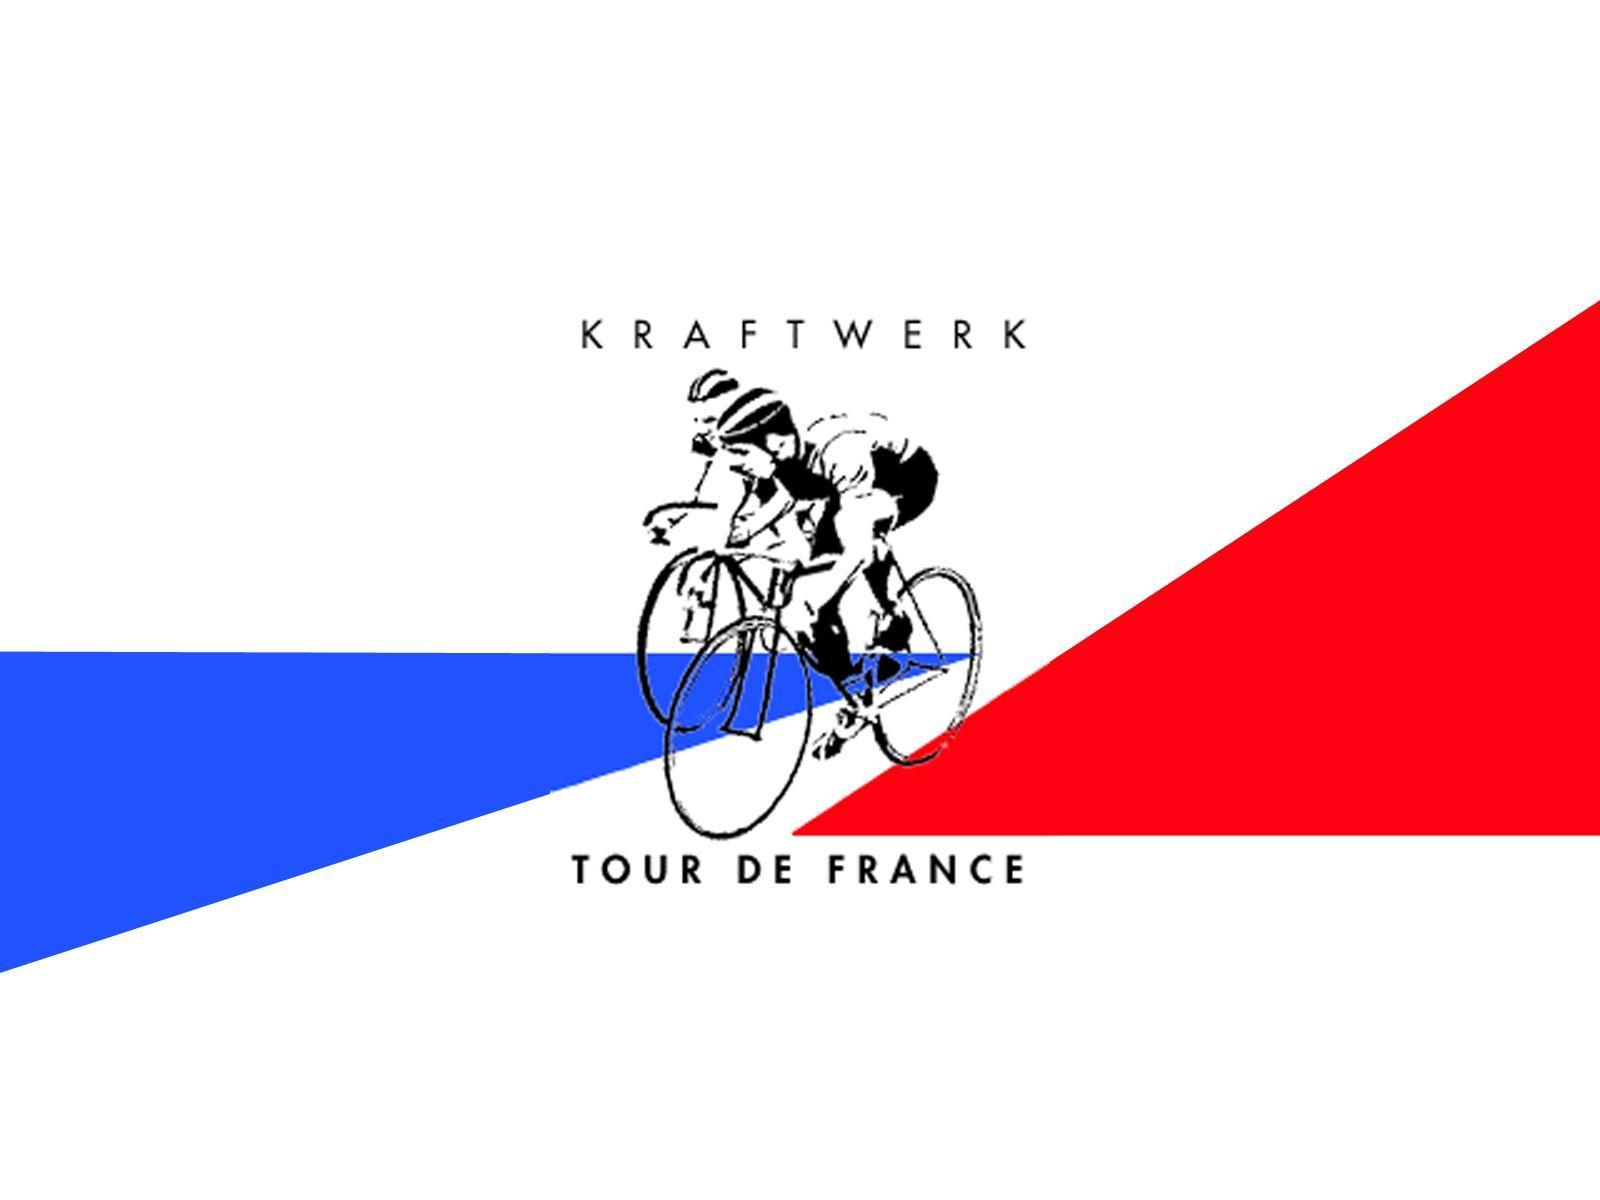 Kraftwerk Tour de France